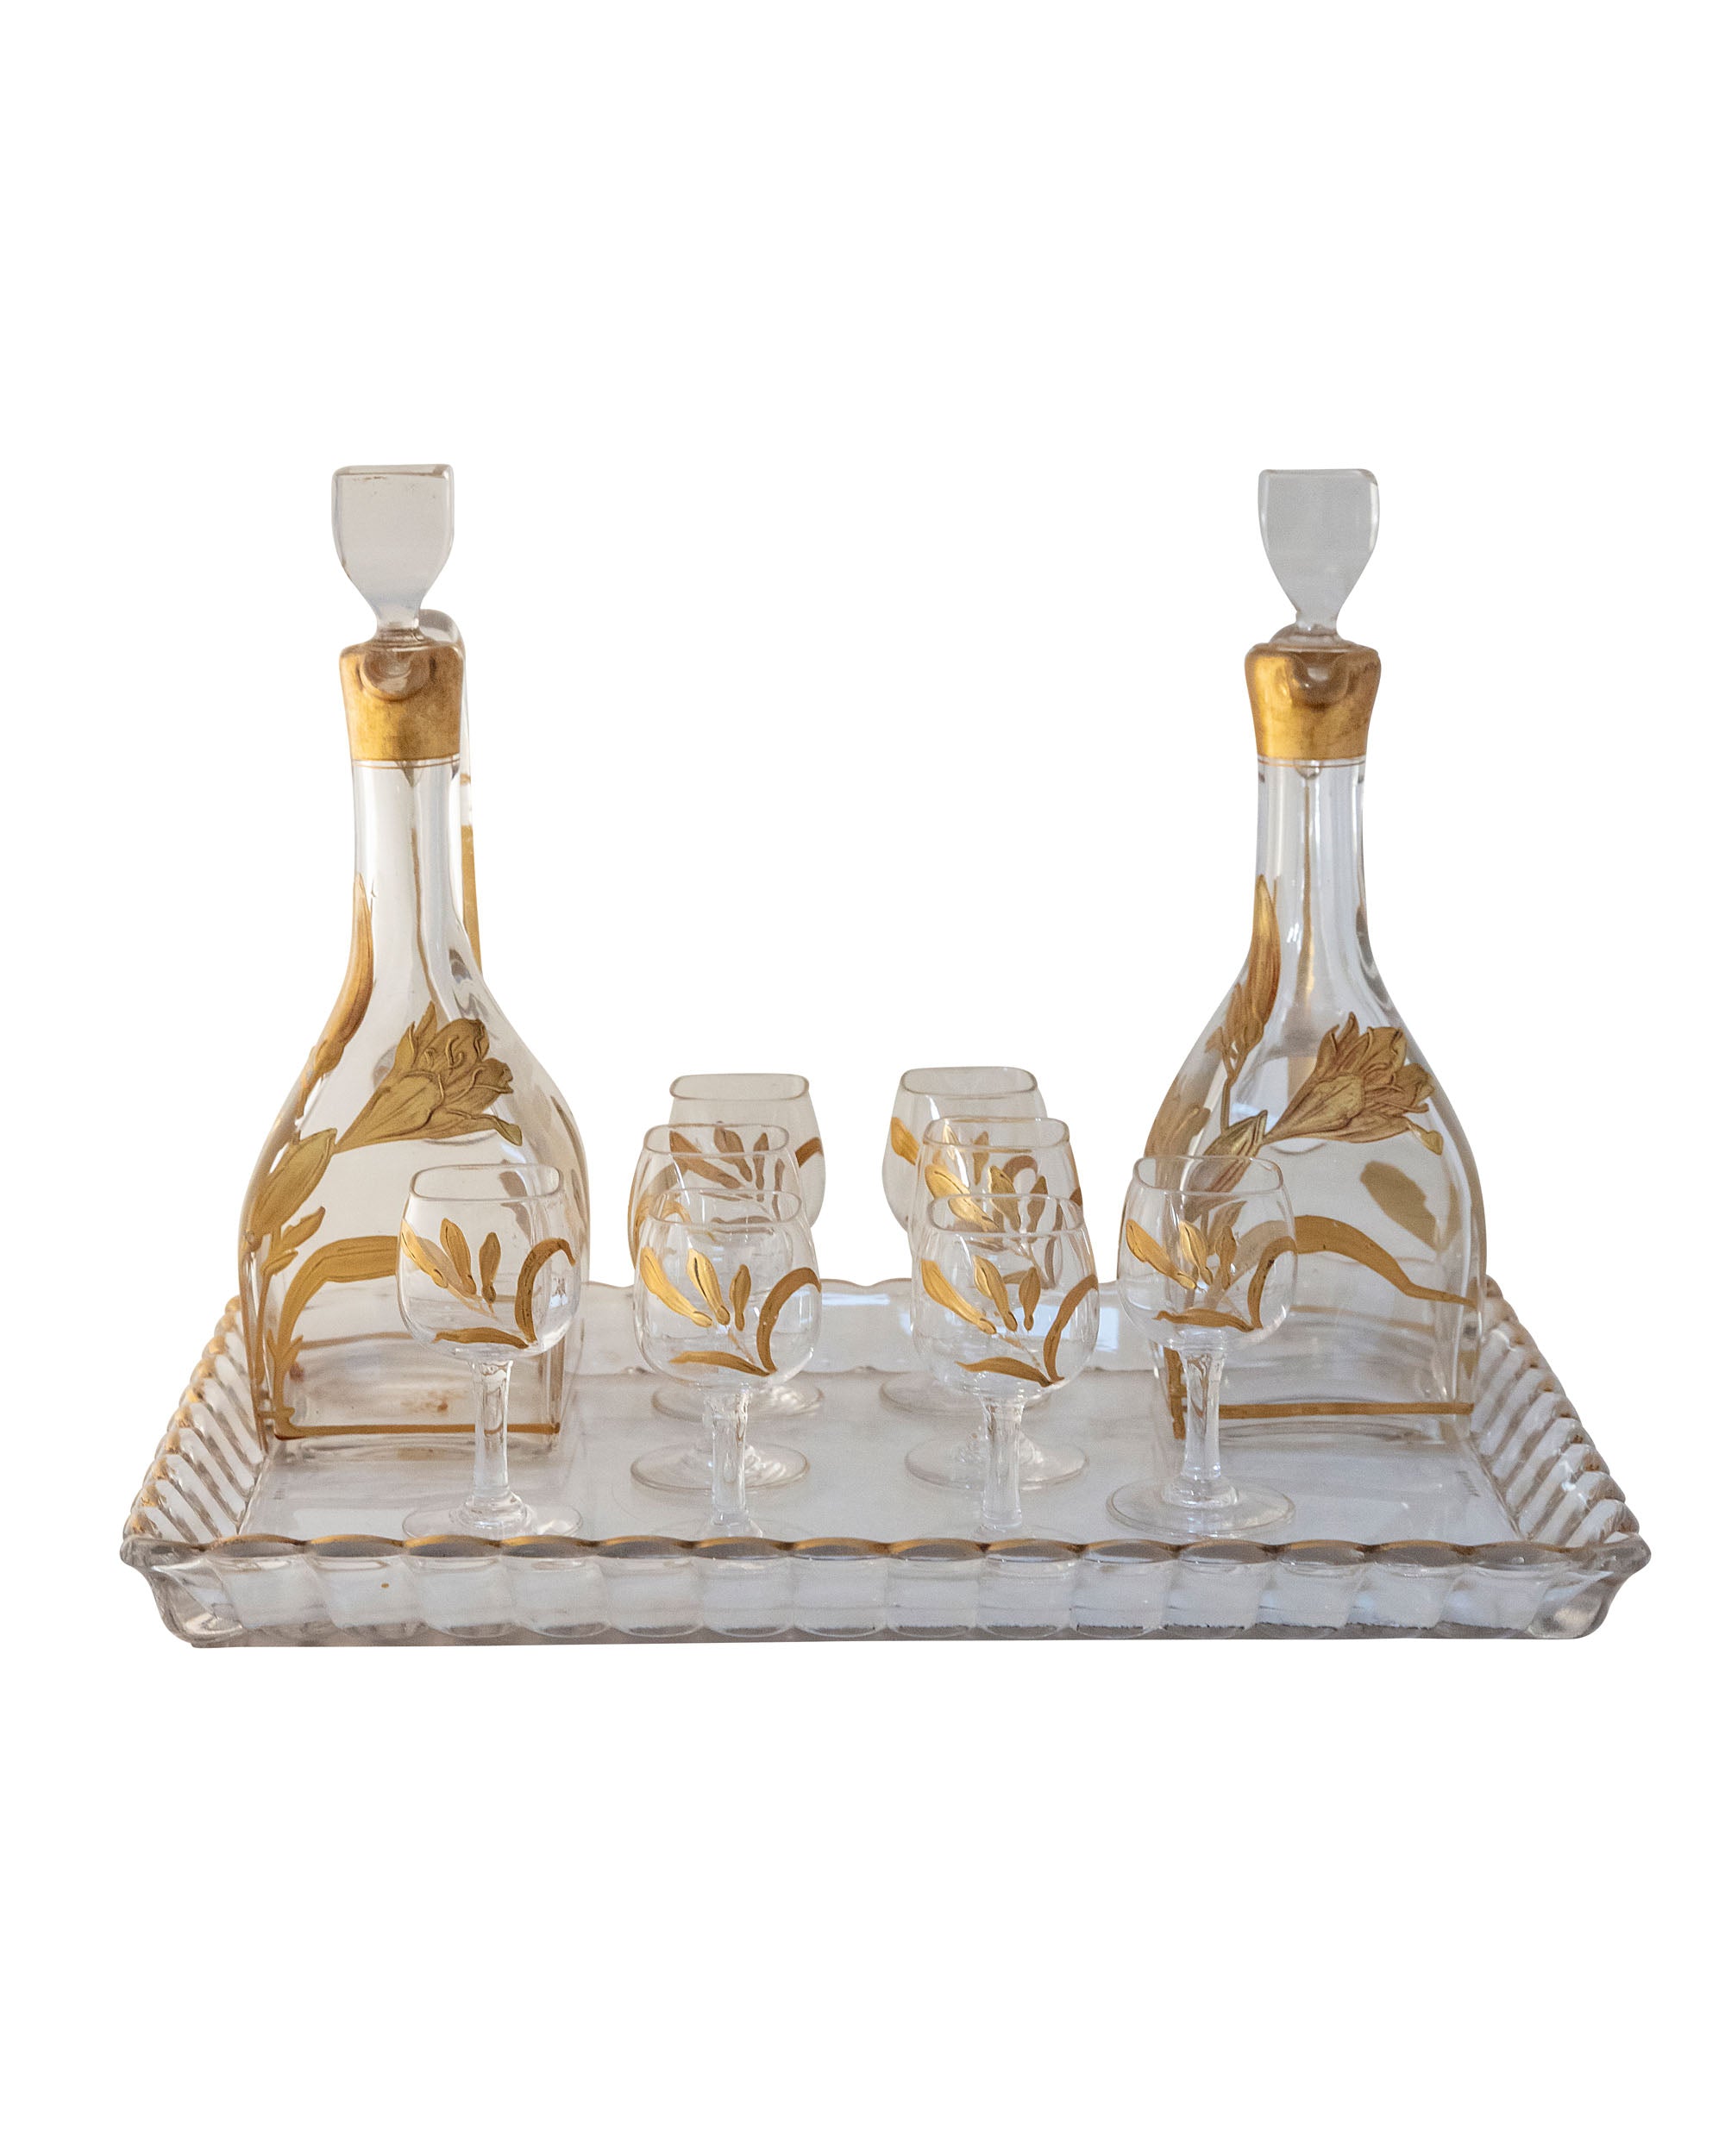 Set de ocho vasos y dos botellas de licor de cristal y pintura dorada con motivos florales con bandeja